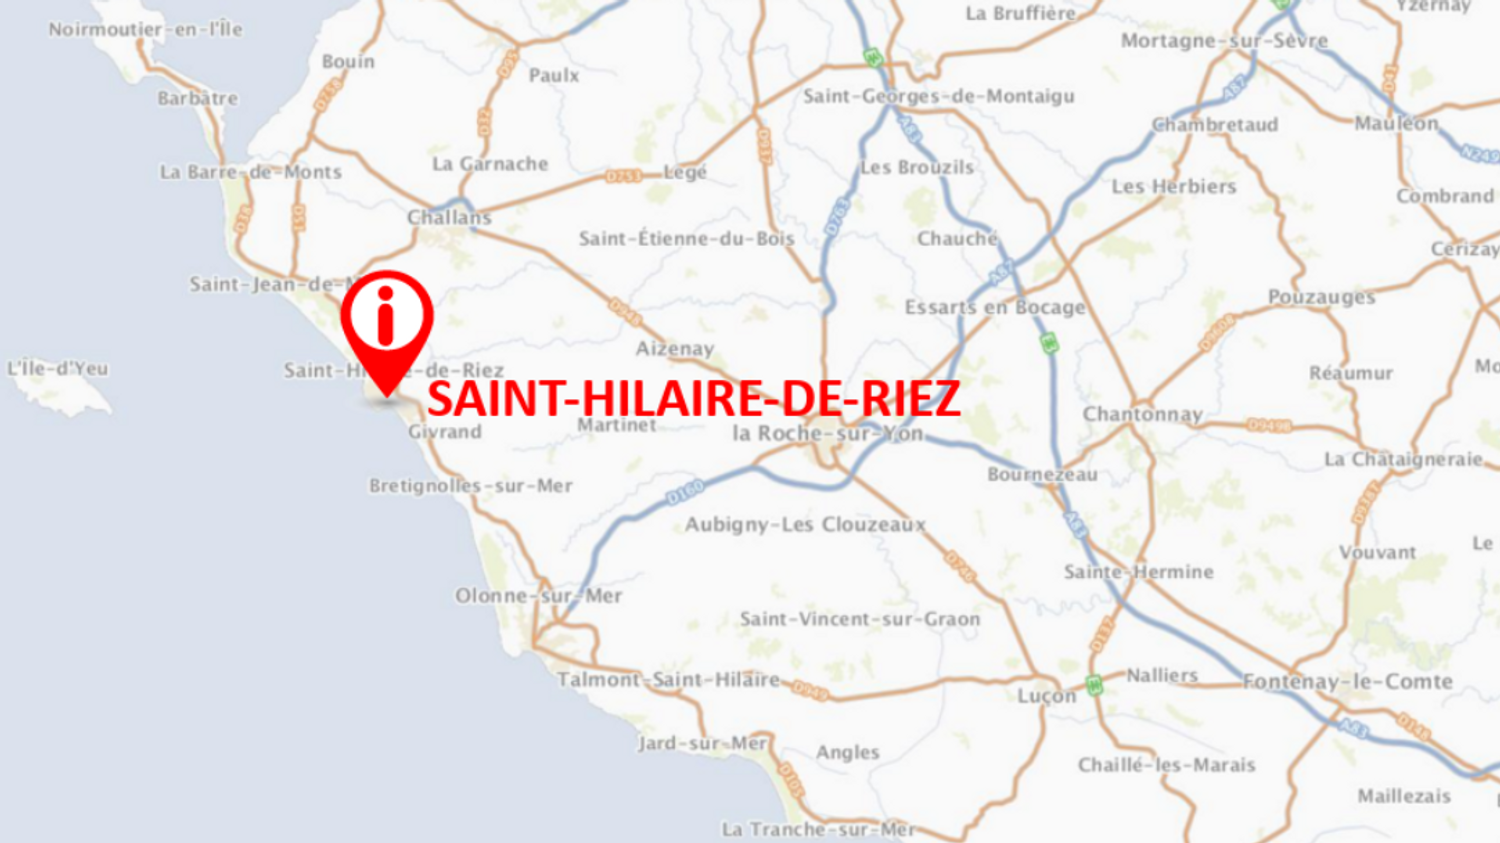 Saint-Hilaire-de-Riez